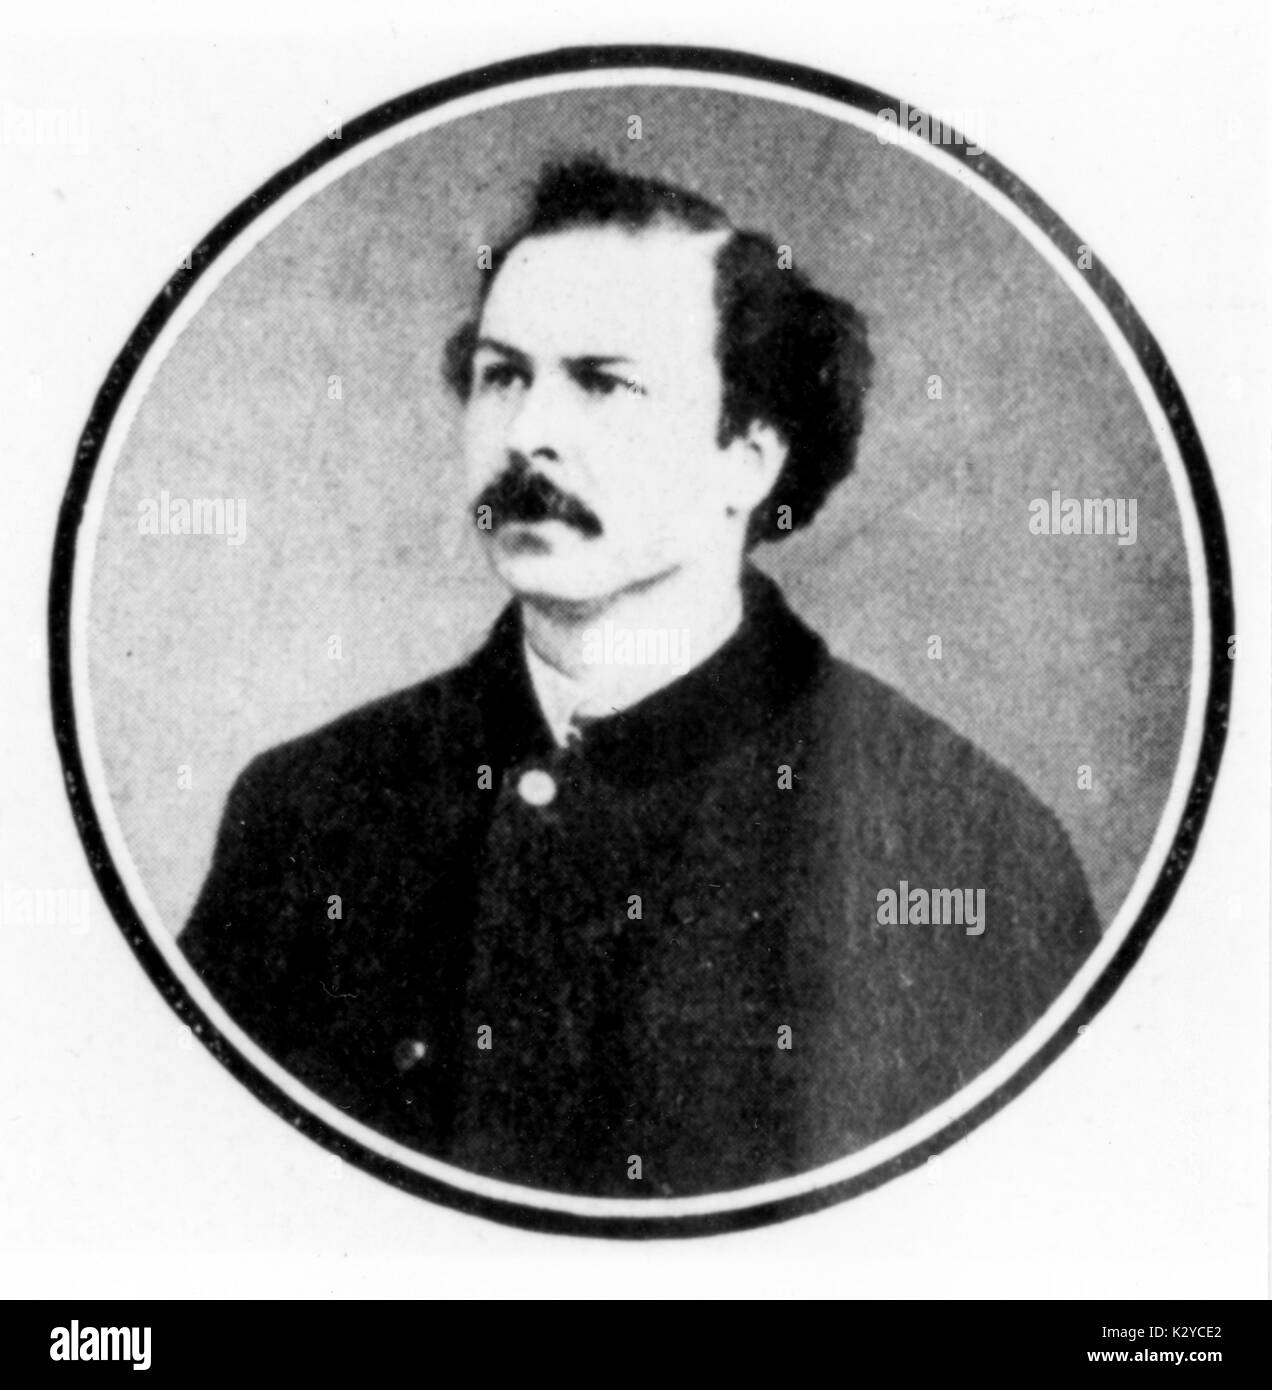 MAILHAC, Henri, französischer Librettist (1831-1897). Mit L Halévy zusammengearbeitet, libretti für Offenbach, Delibes und Bizet zu schreiben Stockfoto